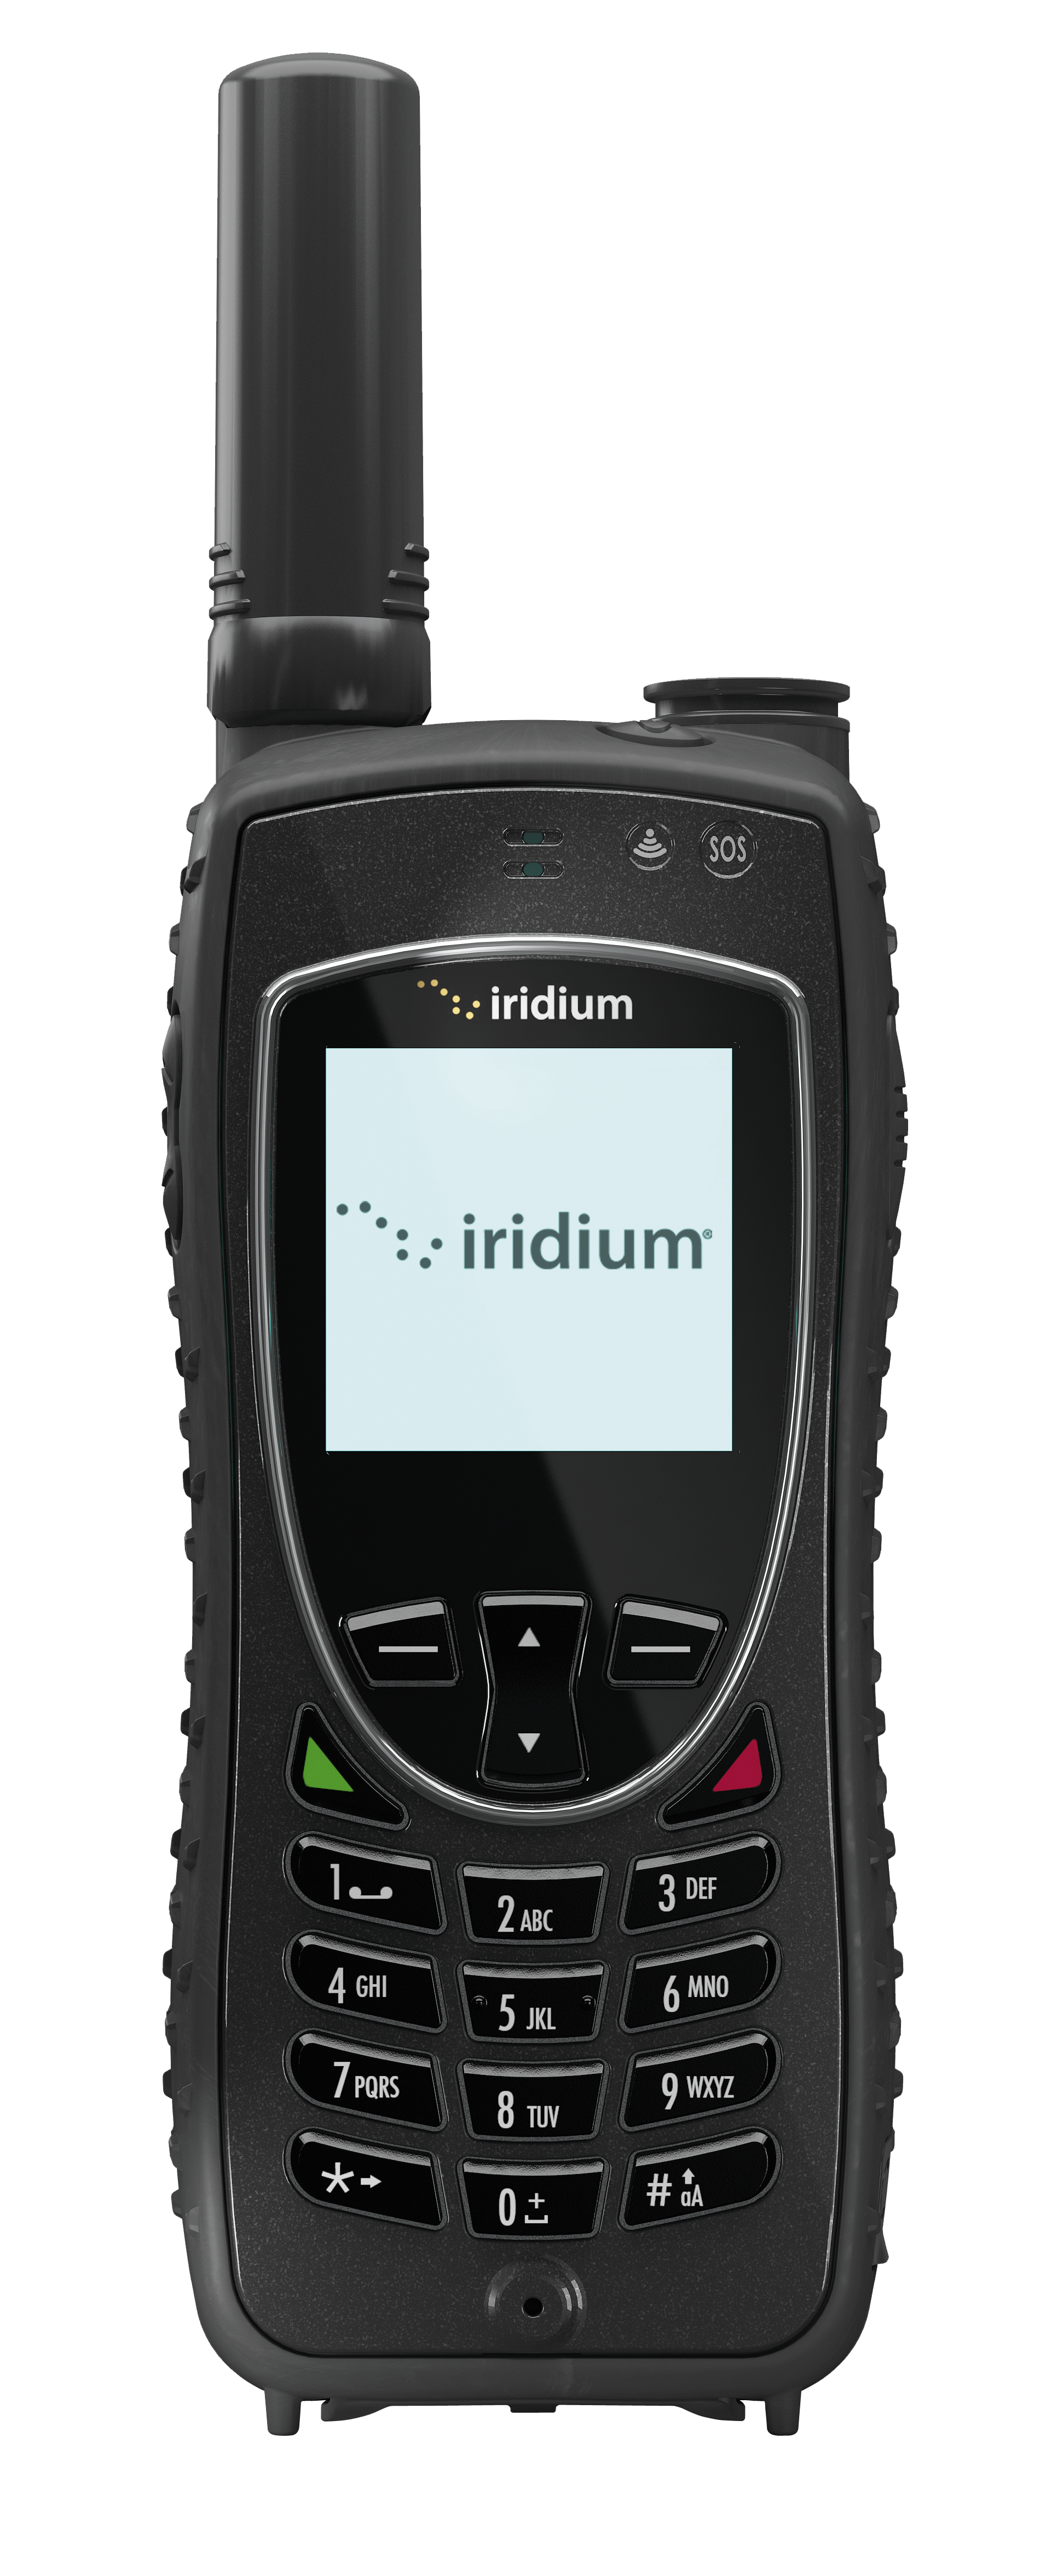 Iridium Extreme 9575 Satellite Phone CPKT2101, CPKTN1901, CPKTN1701